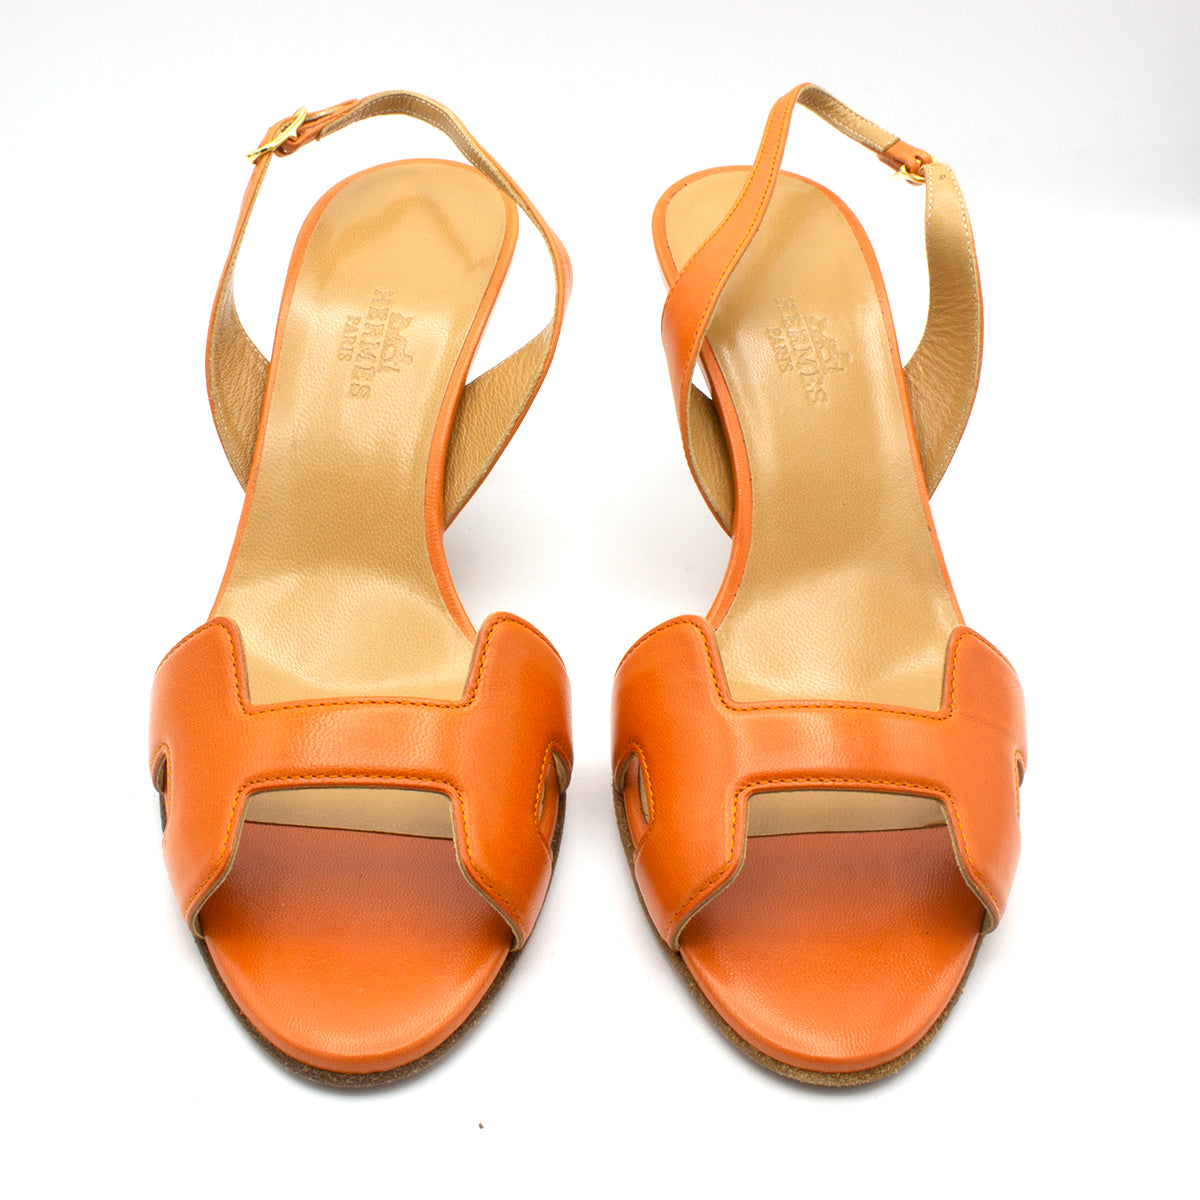 Hermes sandals orange shoes